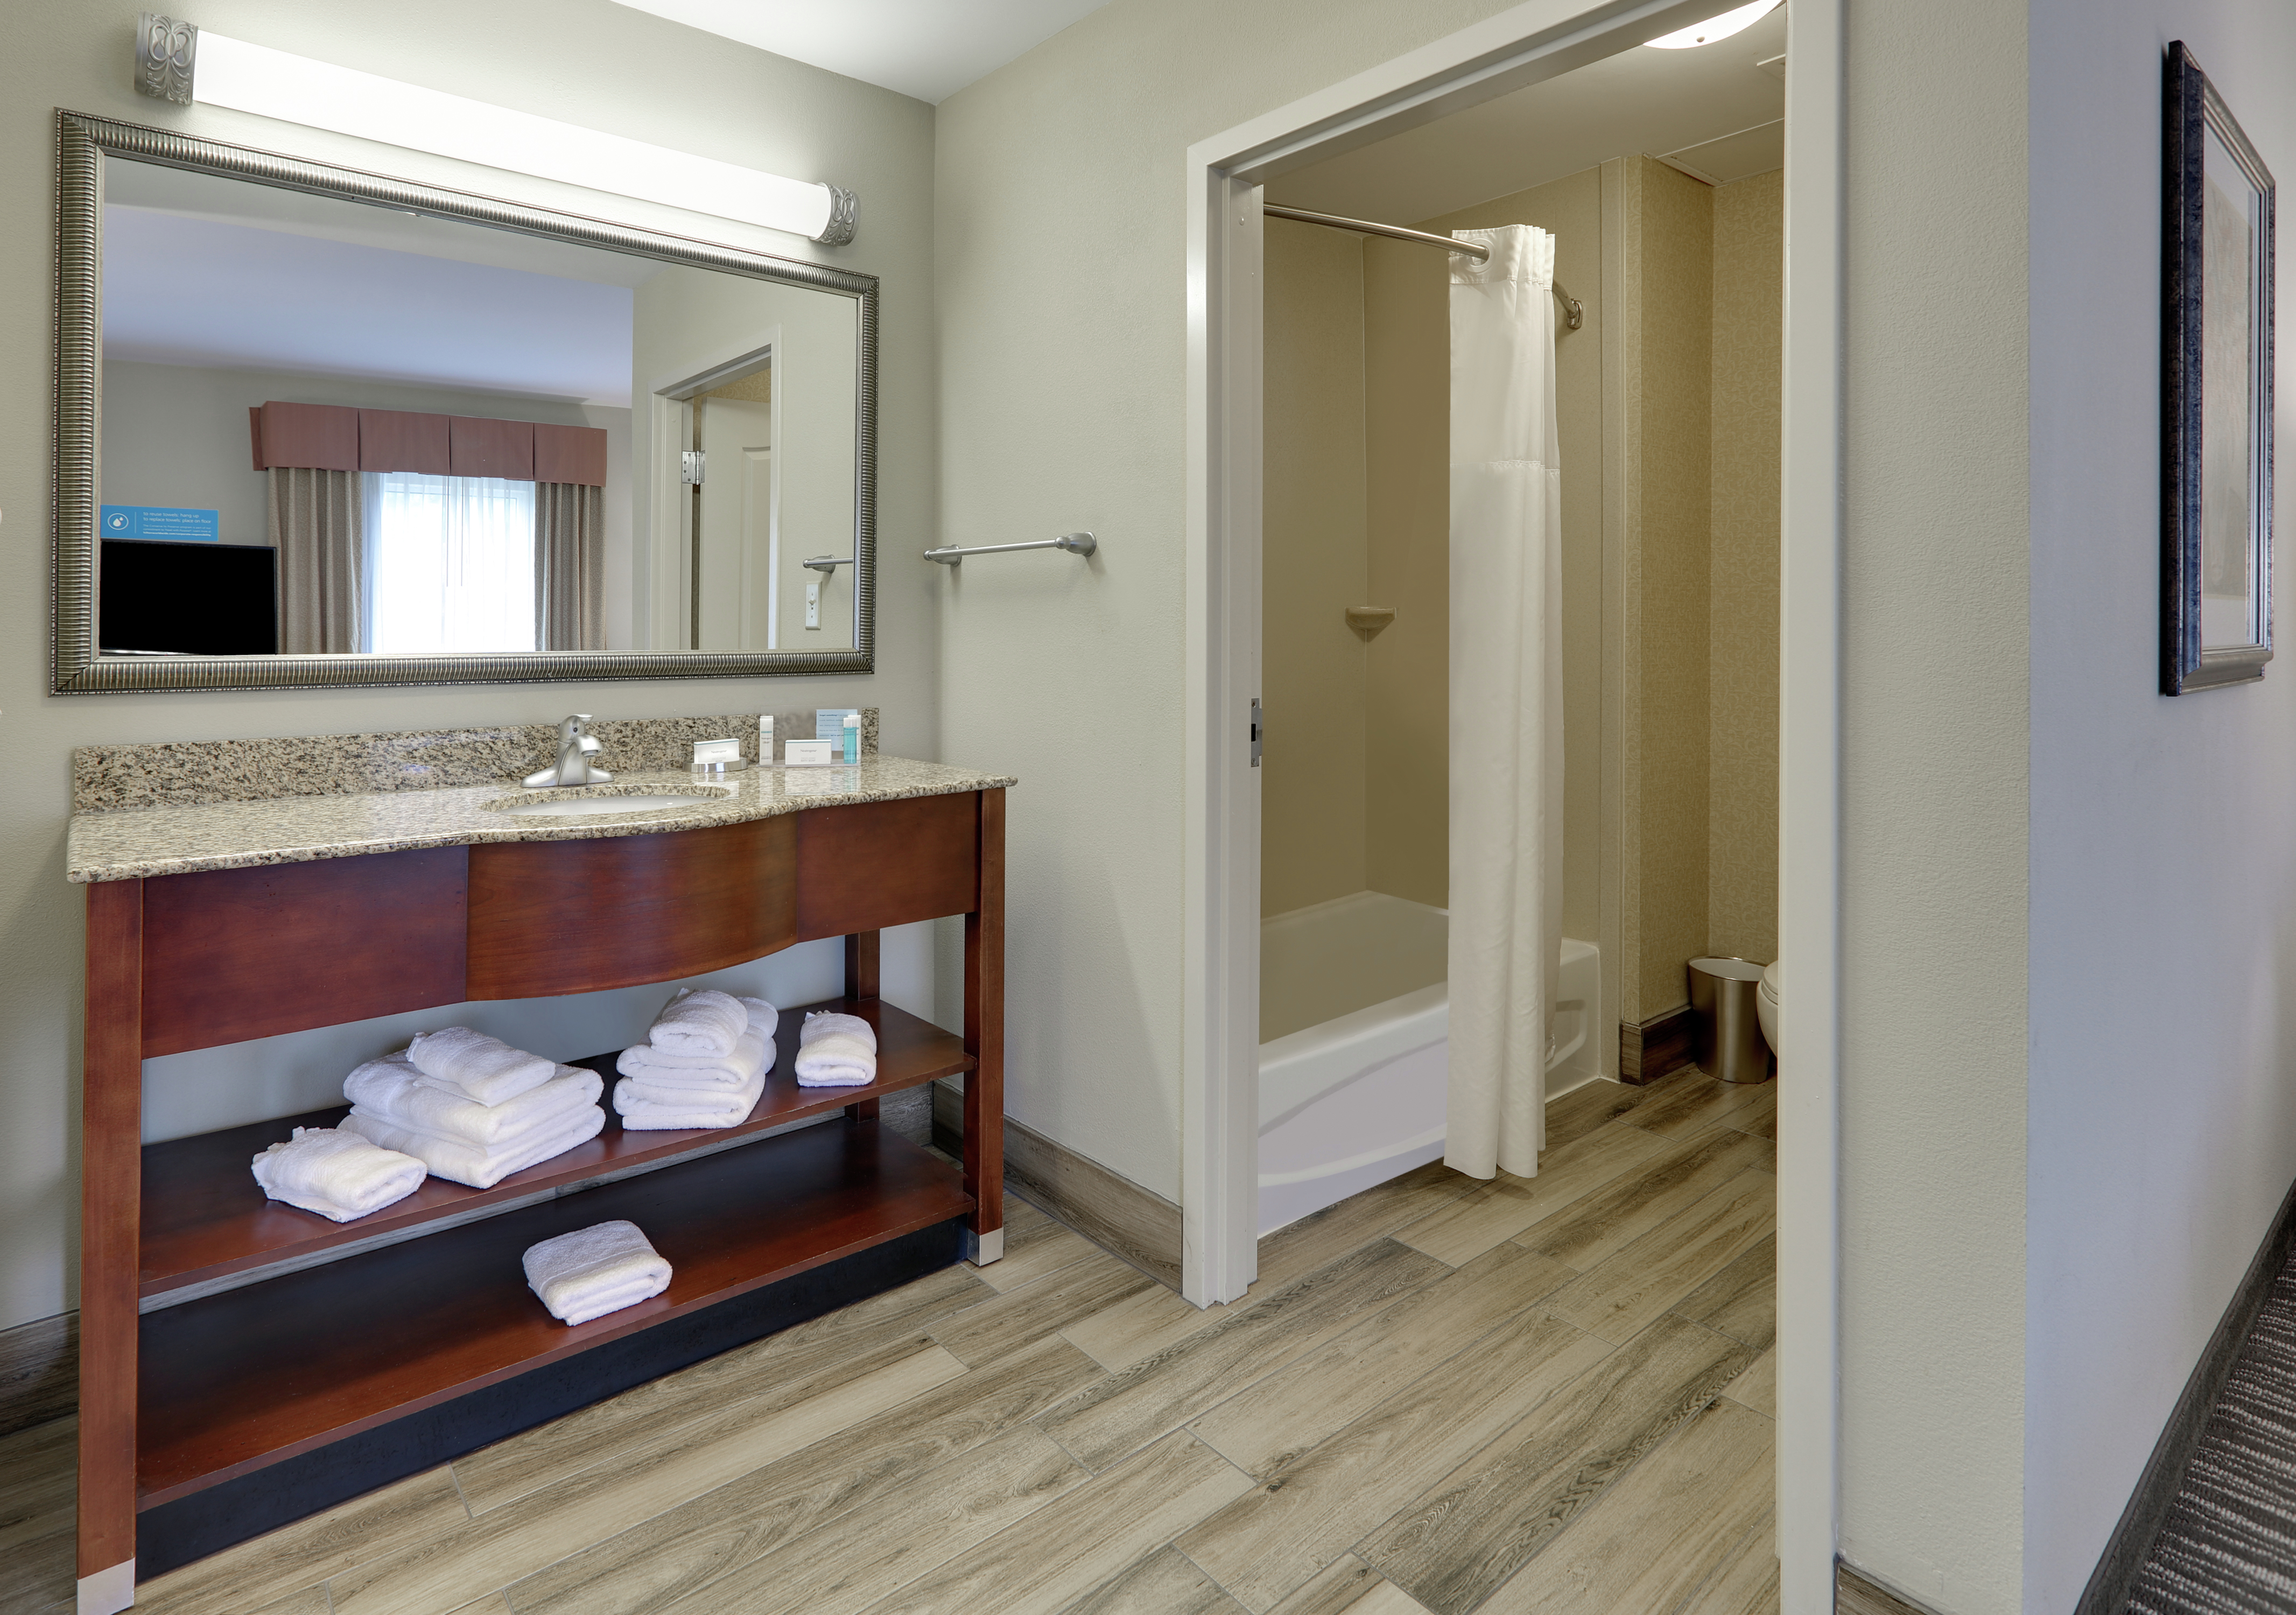 King Suite Bathroom Vanity